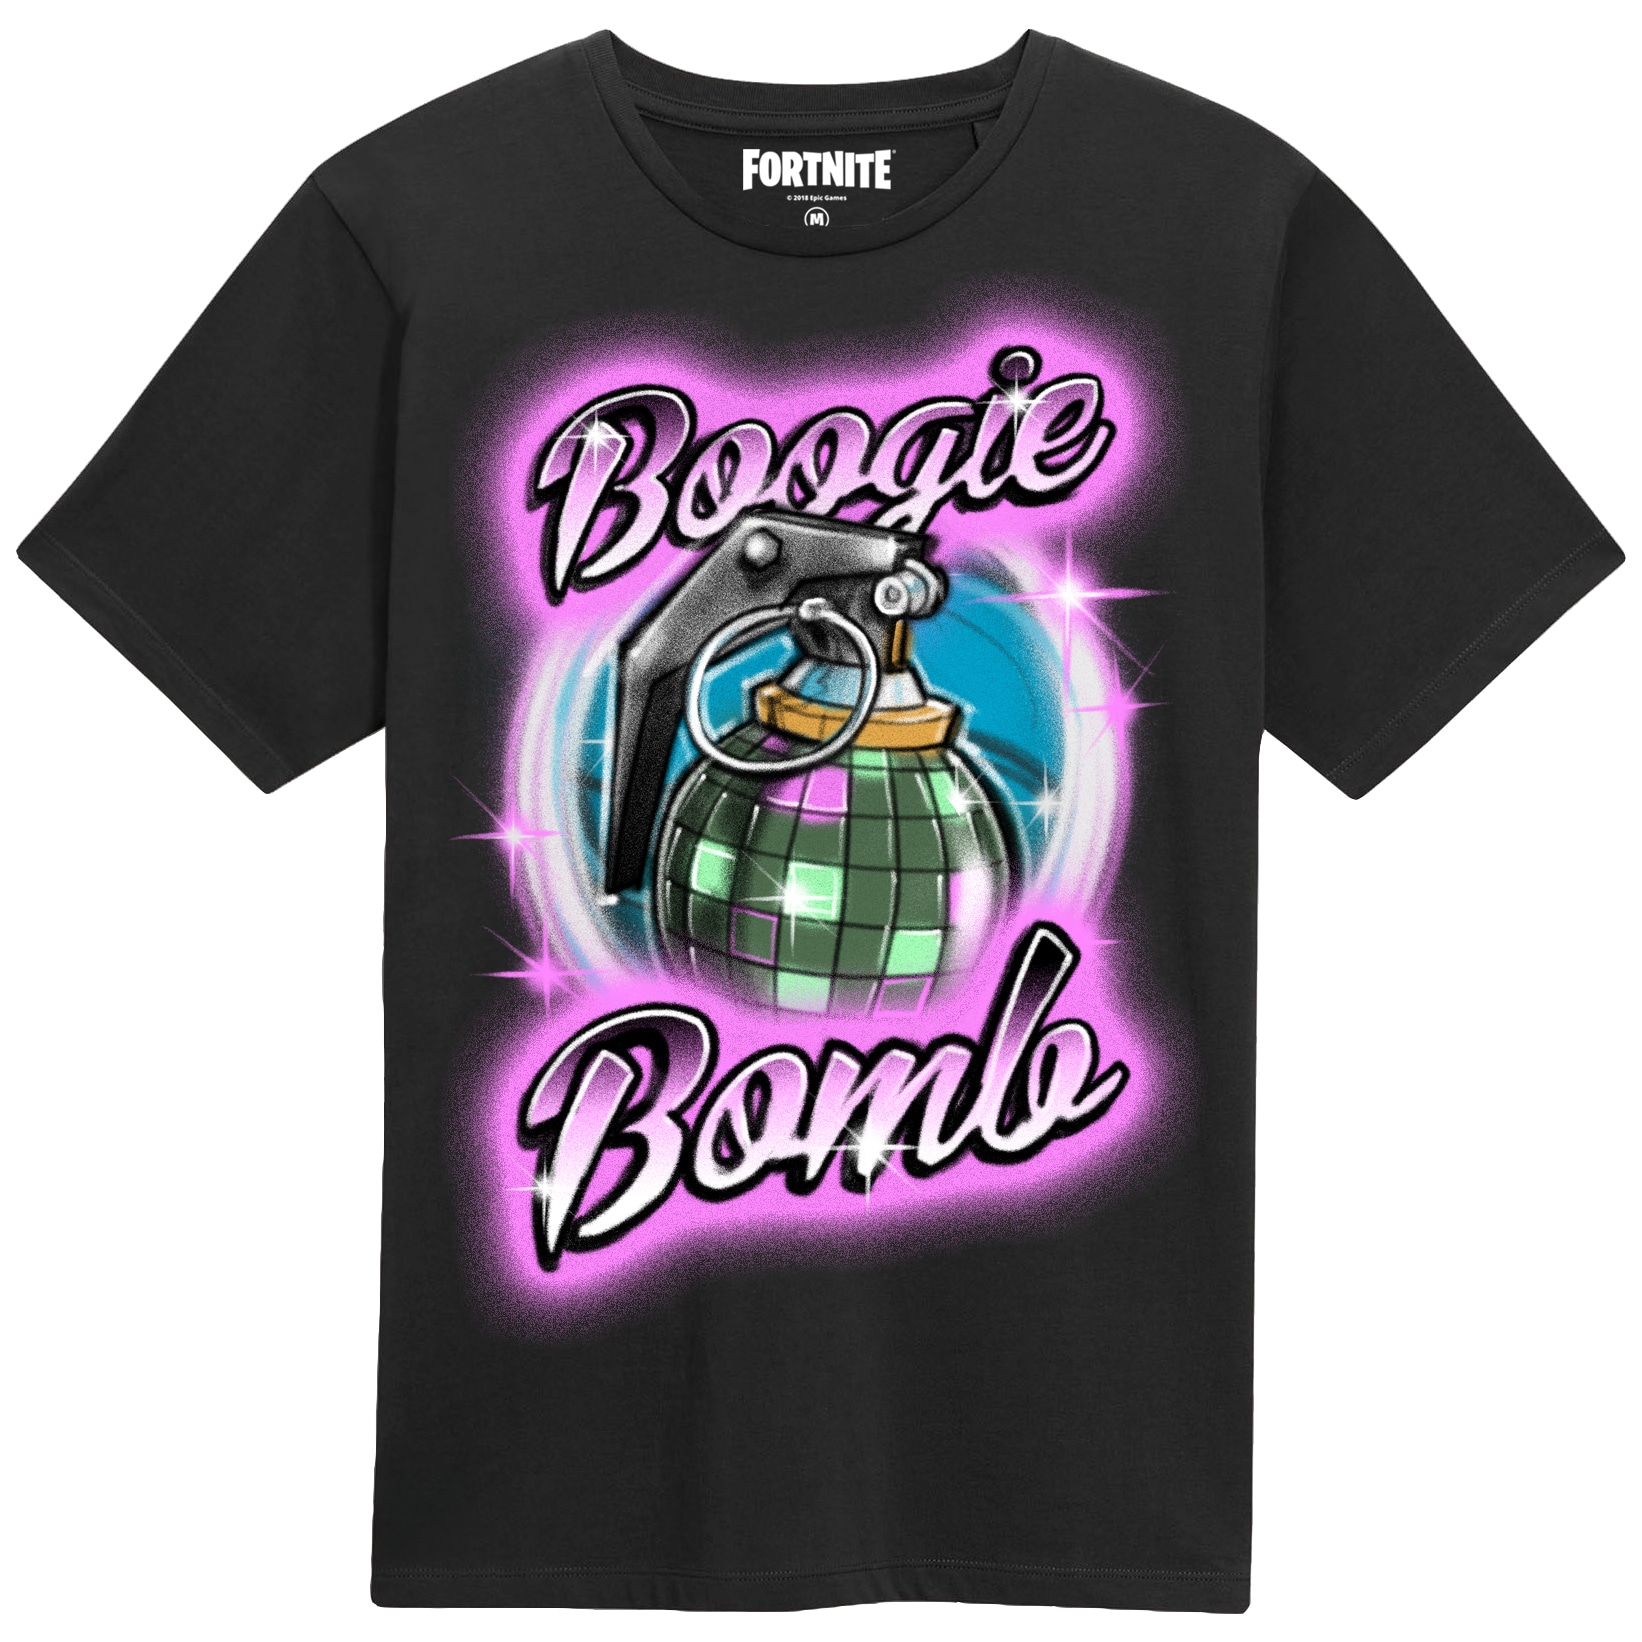 Sommerhus supplere produktion Fortnite - Boogie Bomb t-shirt (str. 12-13 år) | Elgiganten